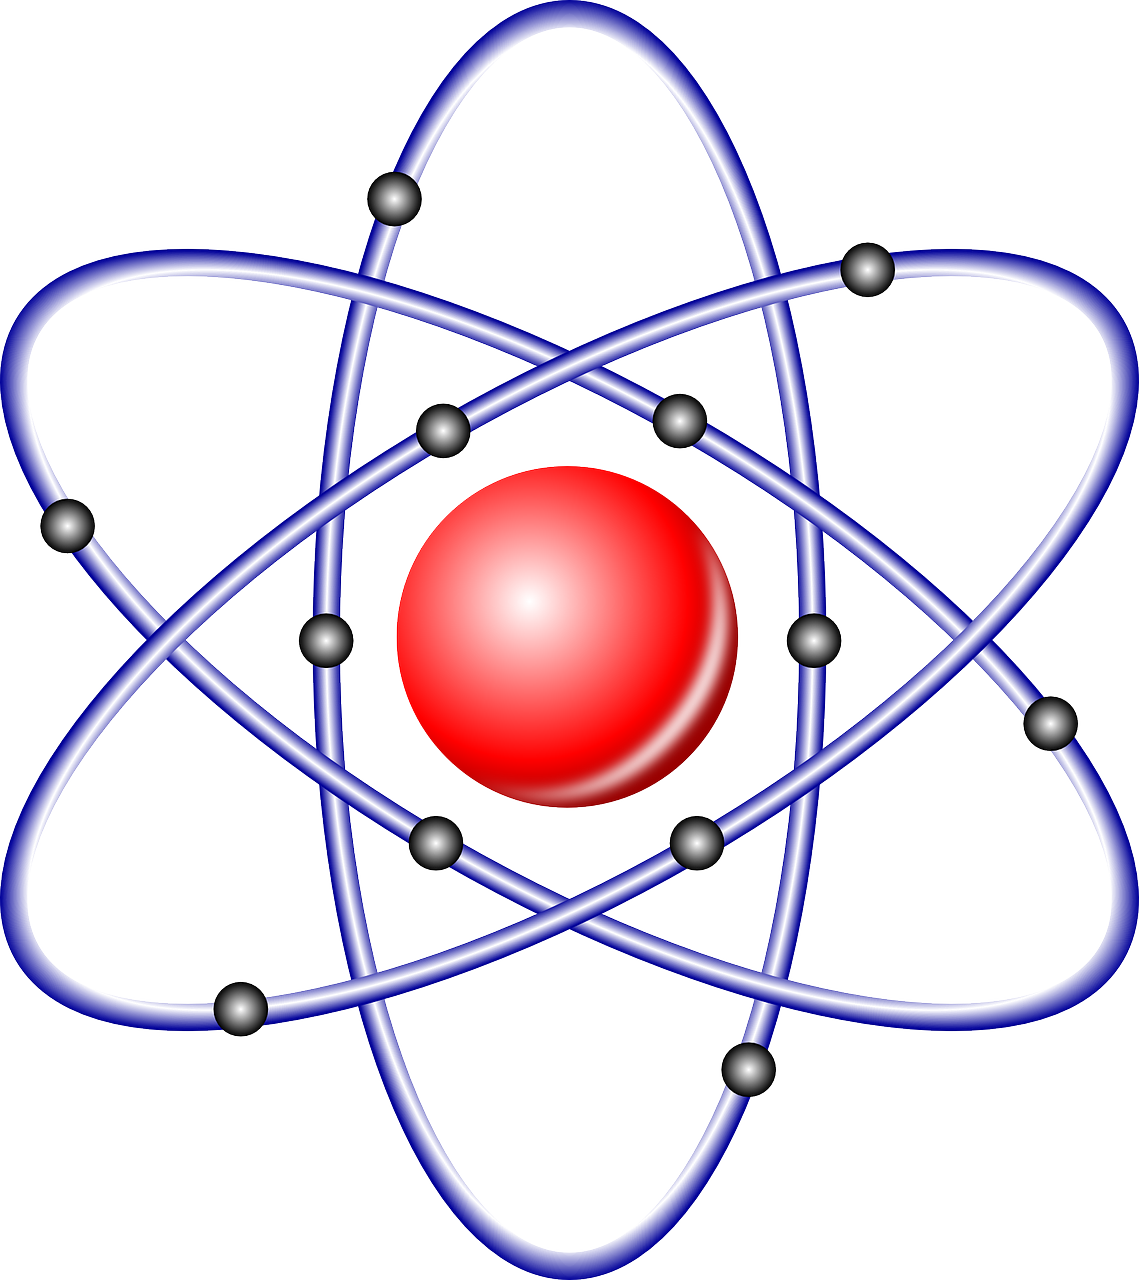 Atomo Branduolys, Branduolinė, Atomas, Branduolys, Chemija, Protonai, Neutronai, Elektronai, Elektronų Debesis, Heisenberg